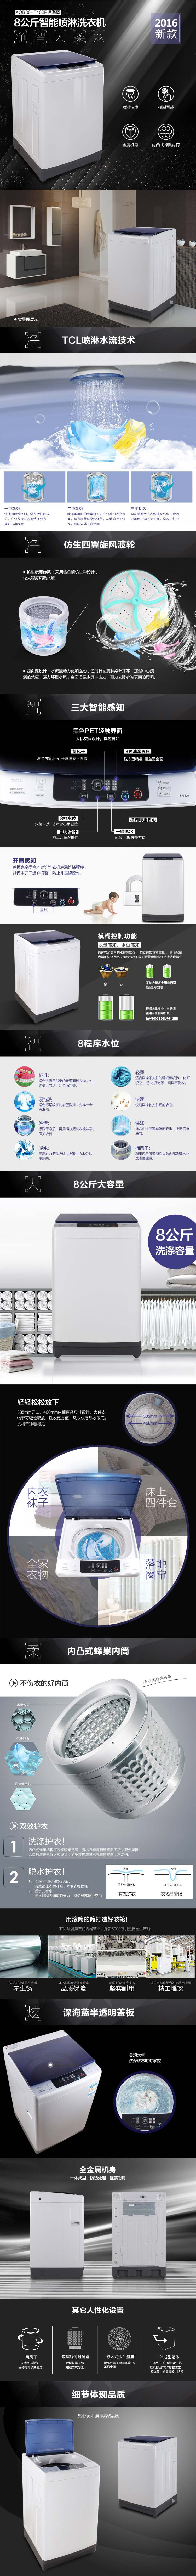 【四川惠民】TCL XQB80-F102P 16年新款 8公斤全自动波轮洗衣机喷